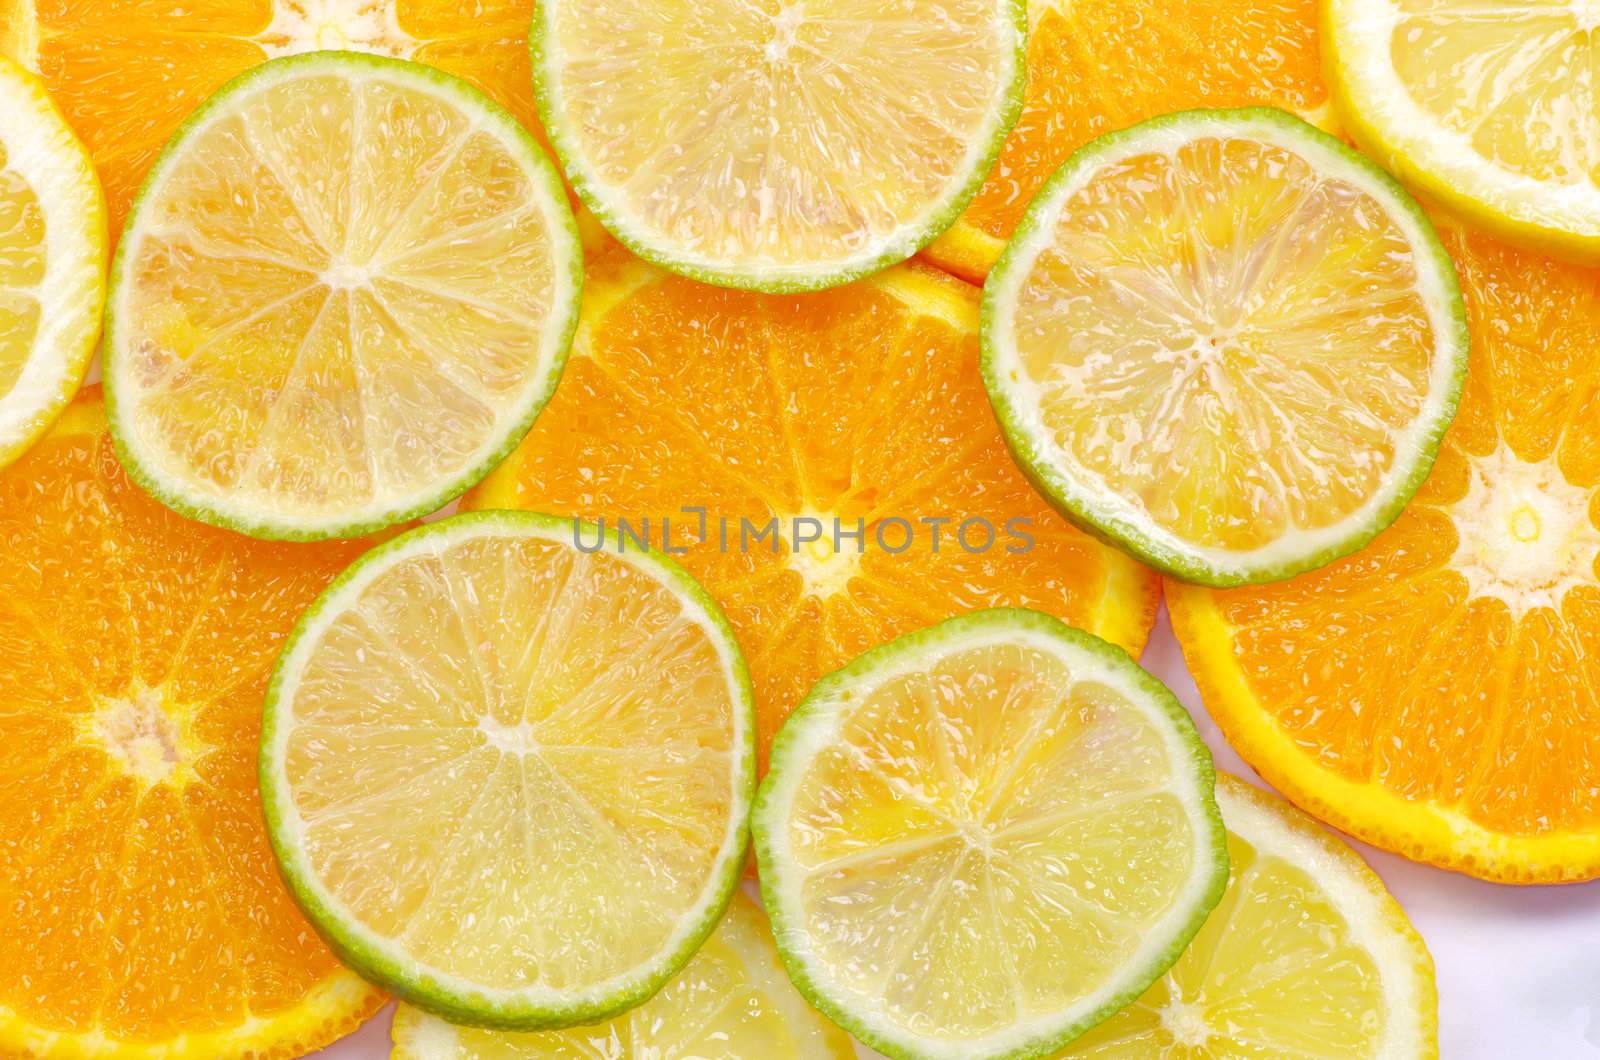  sliced citrus  by Pakhnyushchyy